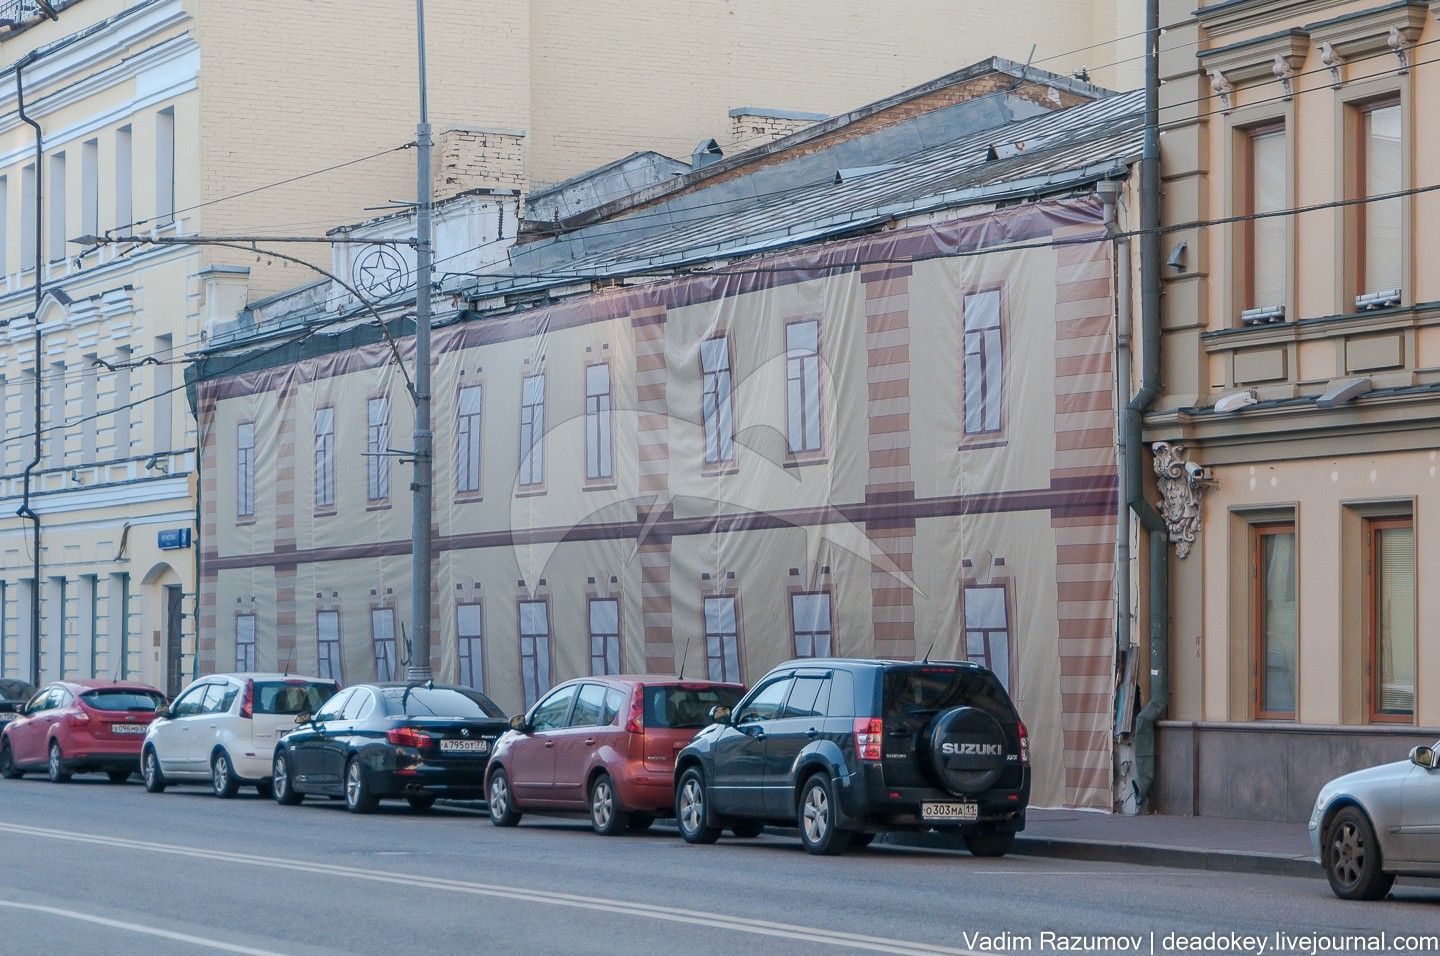 Жилой дом Наумовых-Волконских, 1833 г., 1897 г. Здесь с 1926 года размещается библиотека им. Н.К. Крупской